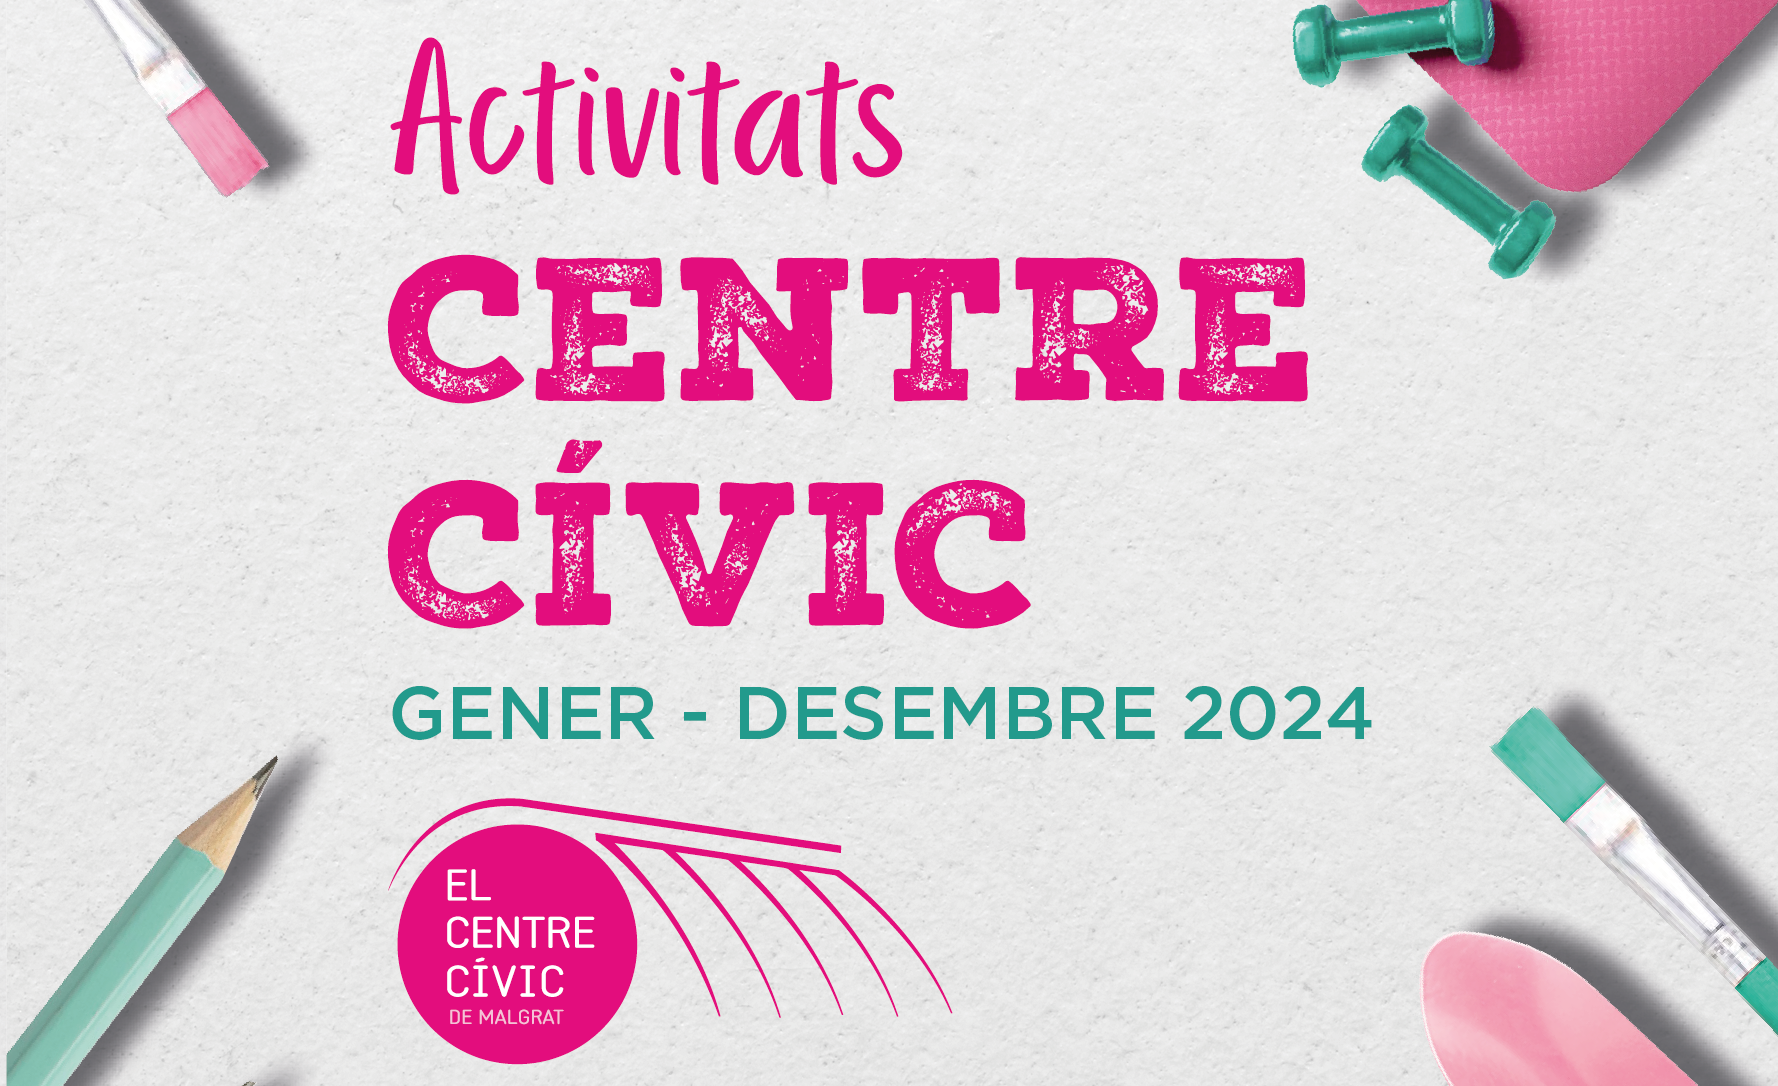 275 inscripcions en el primer dia per apuntar-se a les noves activitats del Centre Cívic